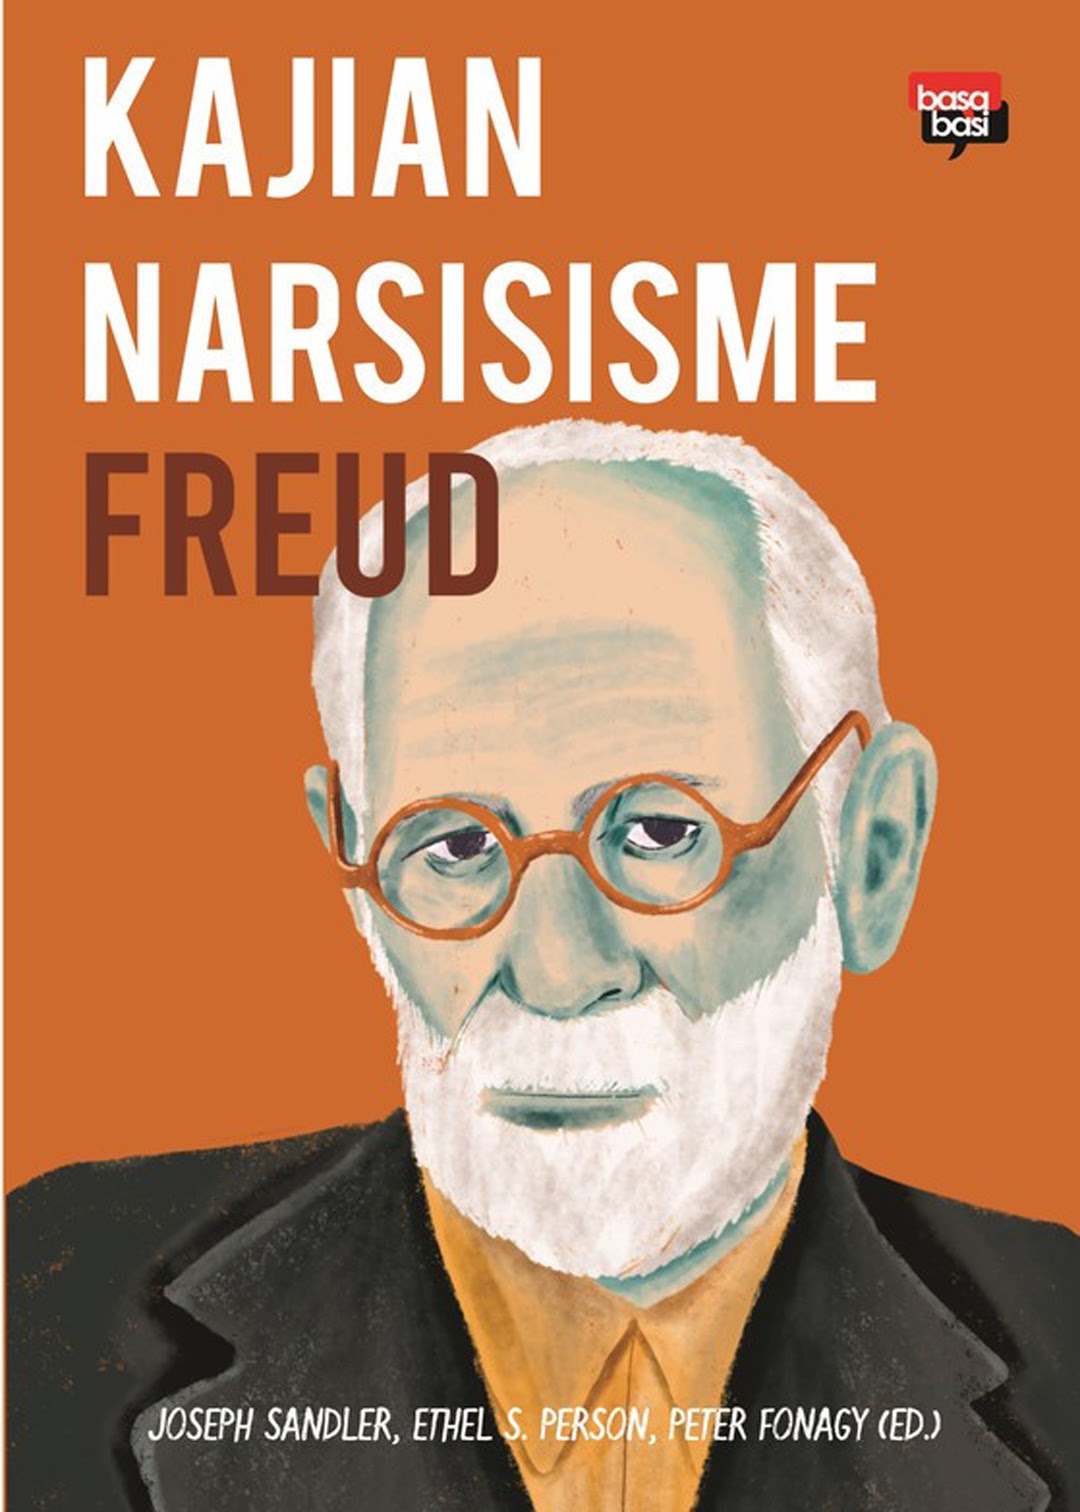 Kajian narsisisme Freud